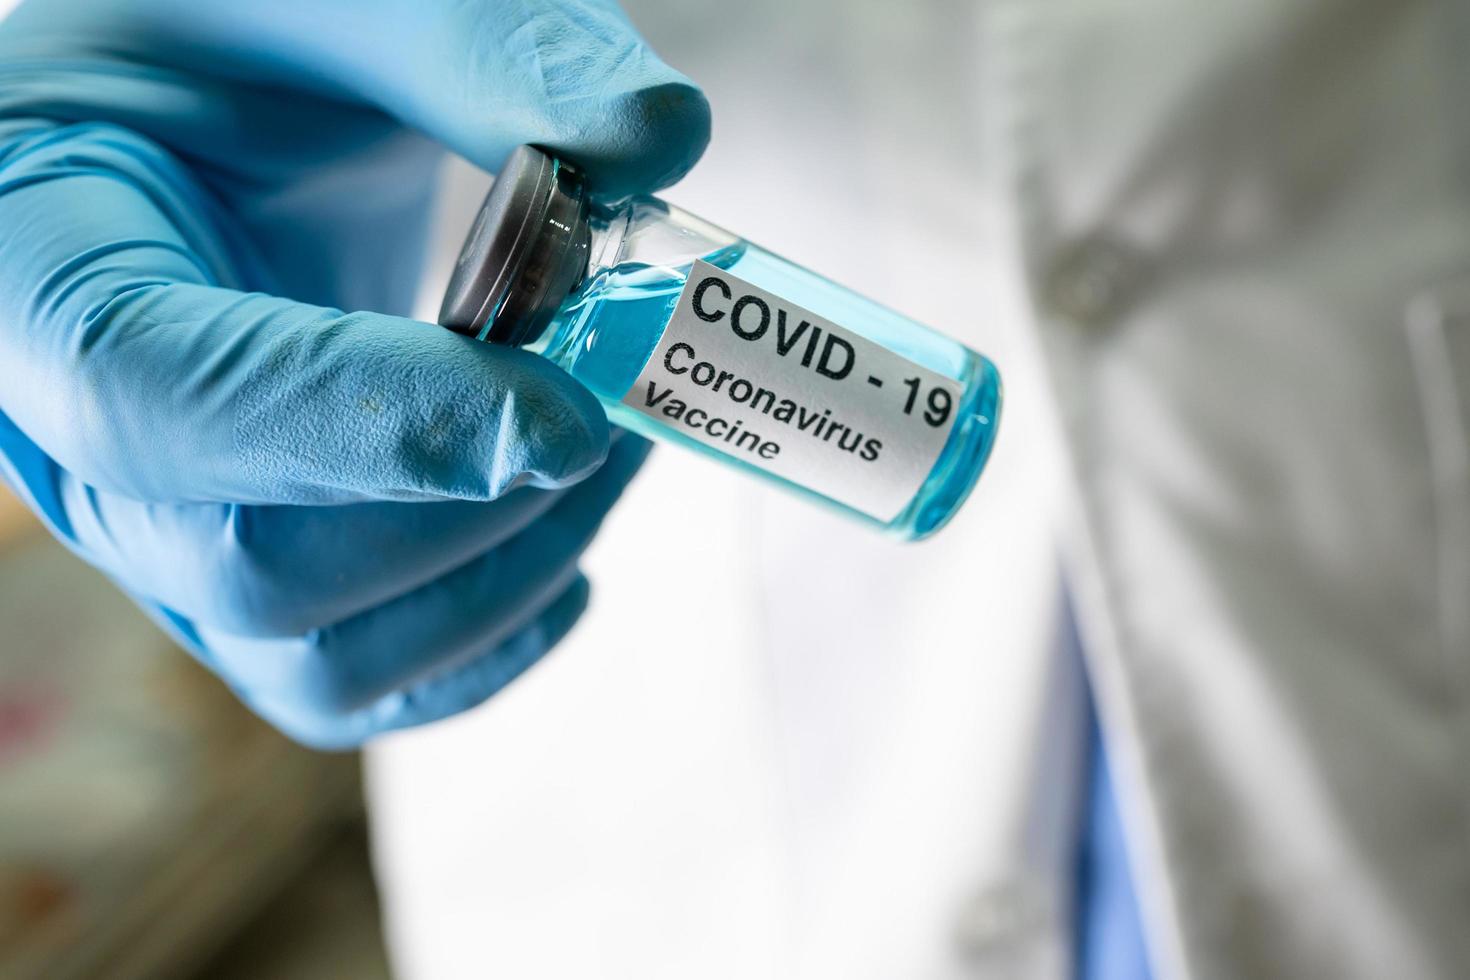 desenvolvimento de vacina contra coronavírus covid-19 médica para uso médico no tratamento de pacientes com doenças no hospital. foto